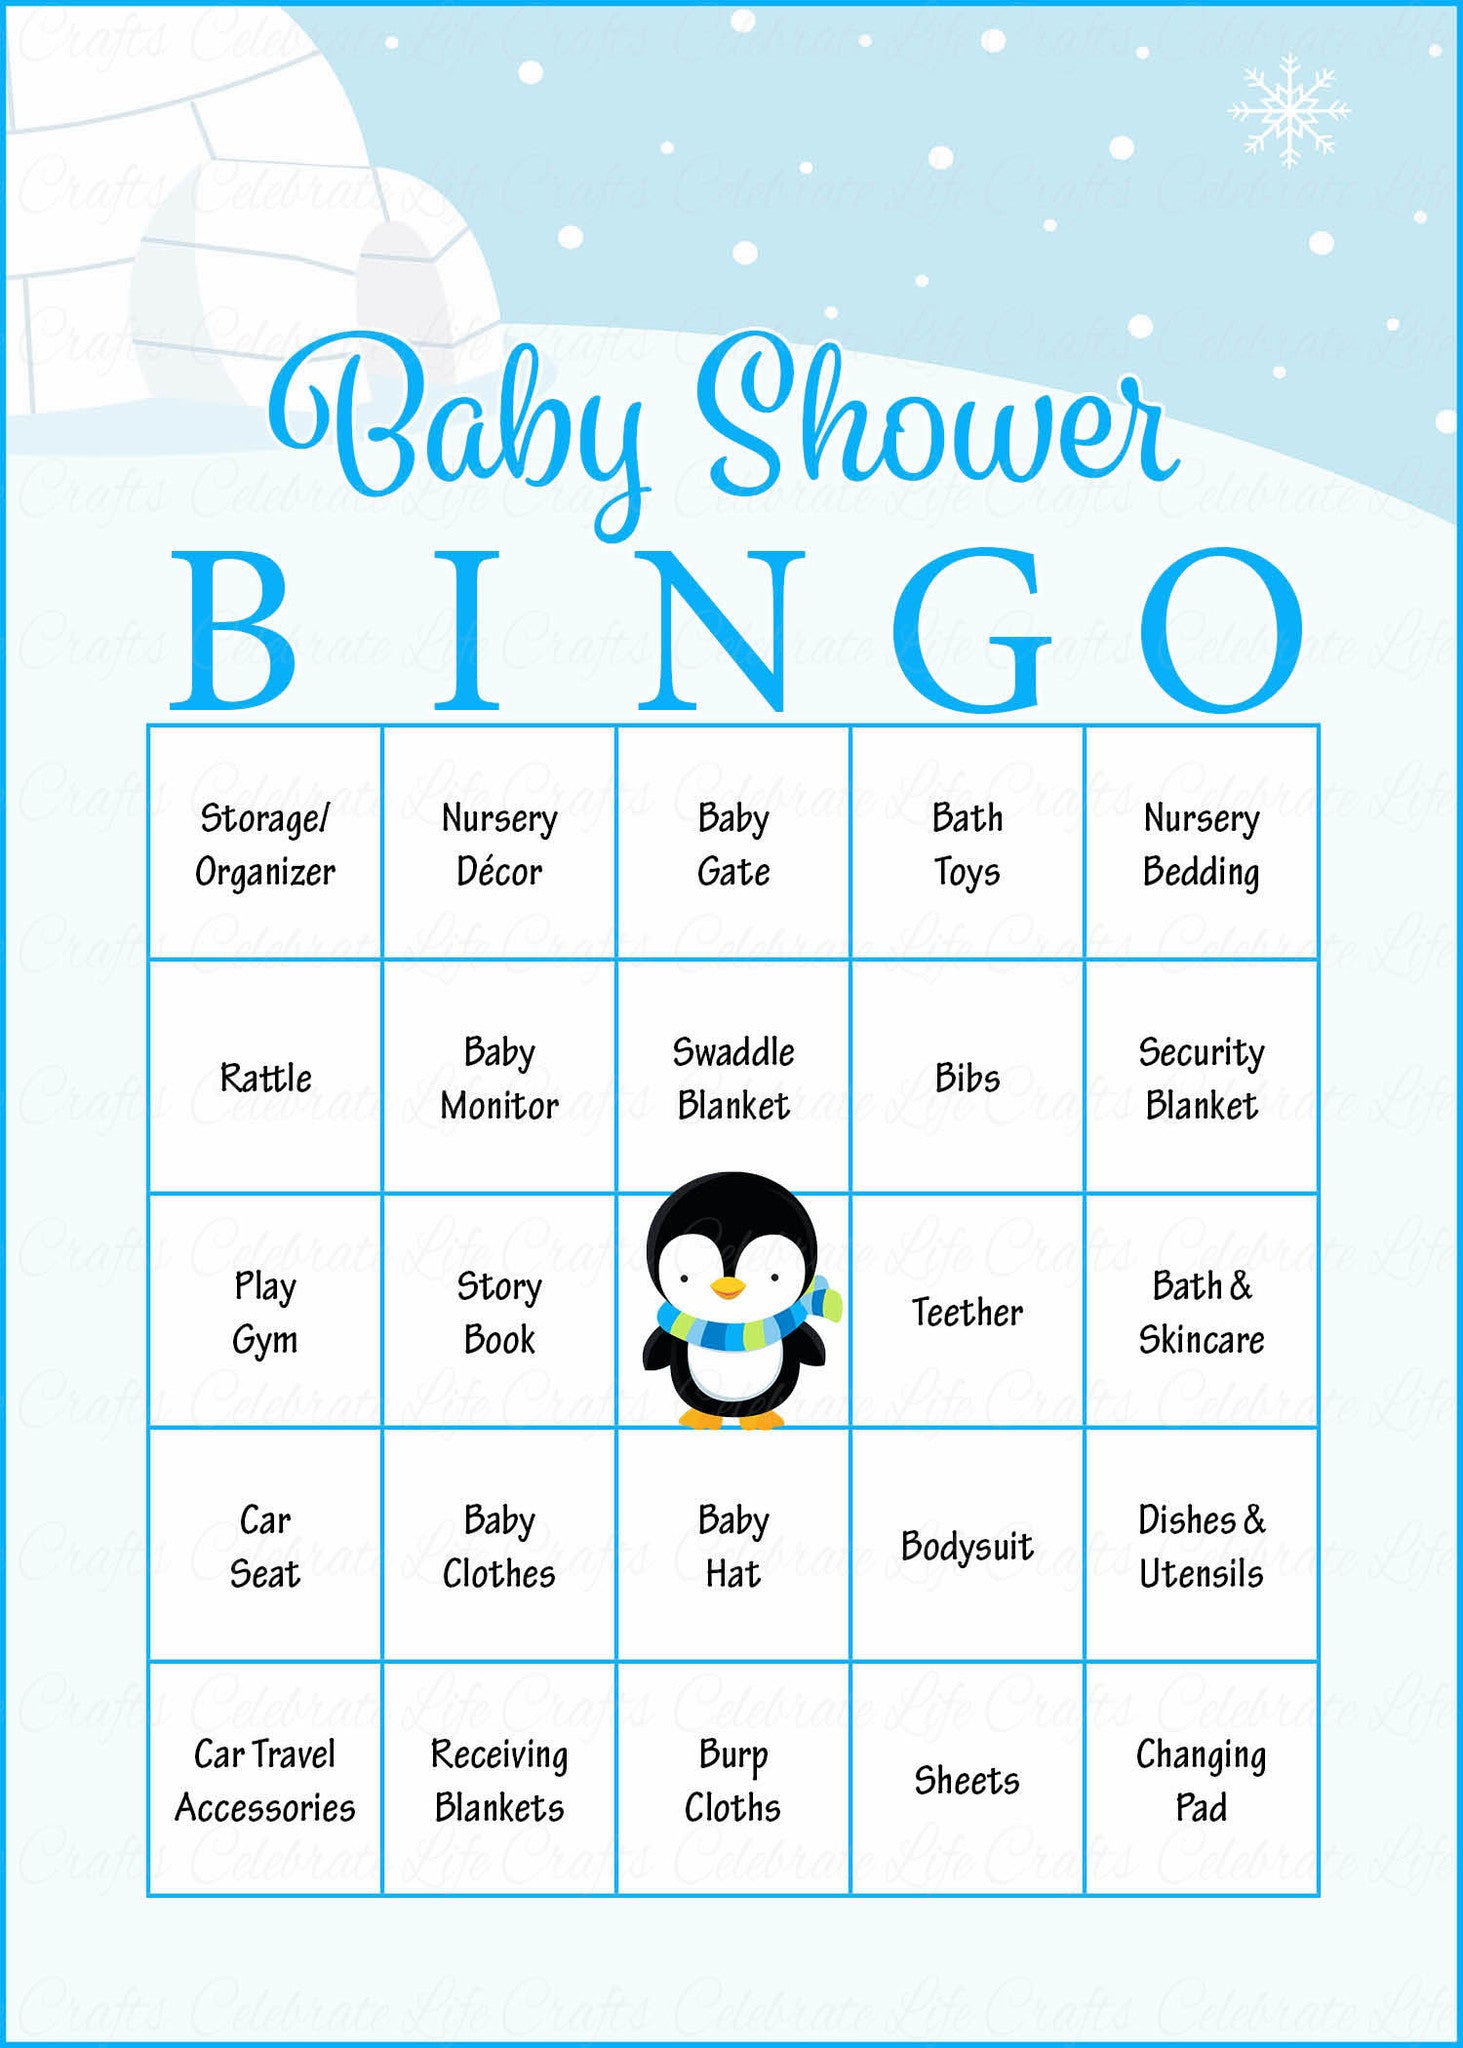 Baby Shower Bingo Rules